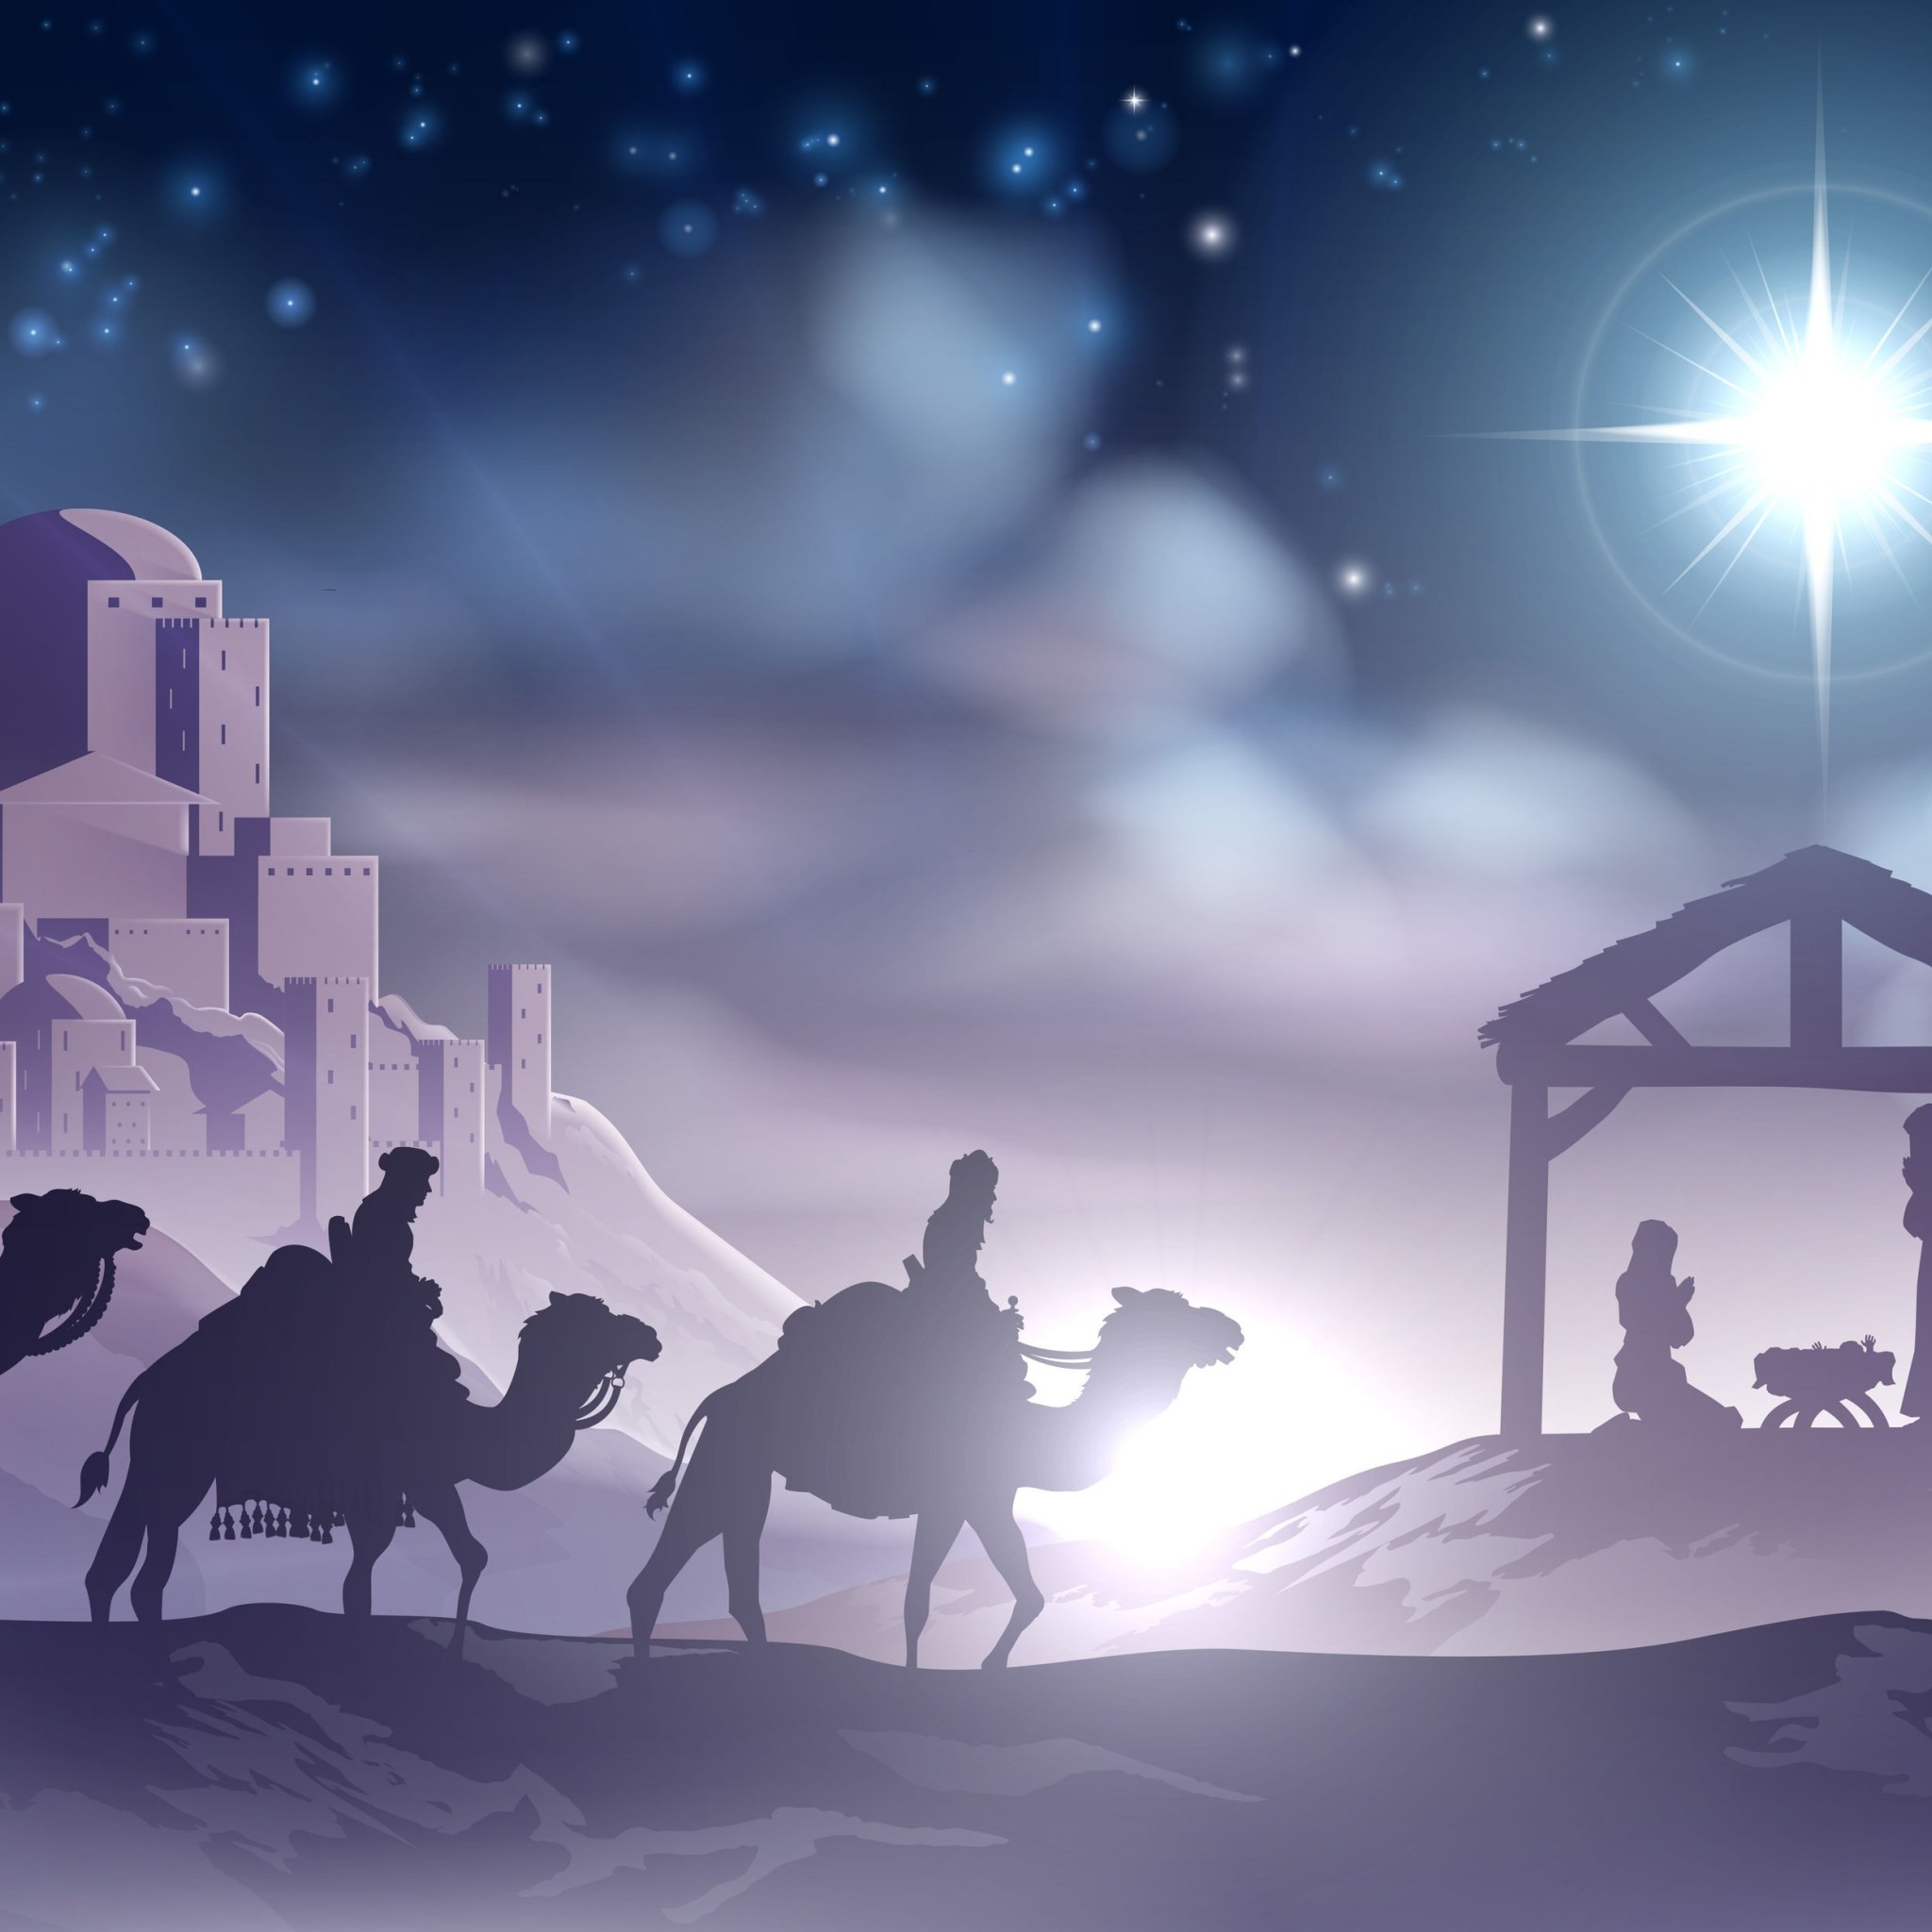 nativity scene background  images